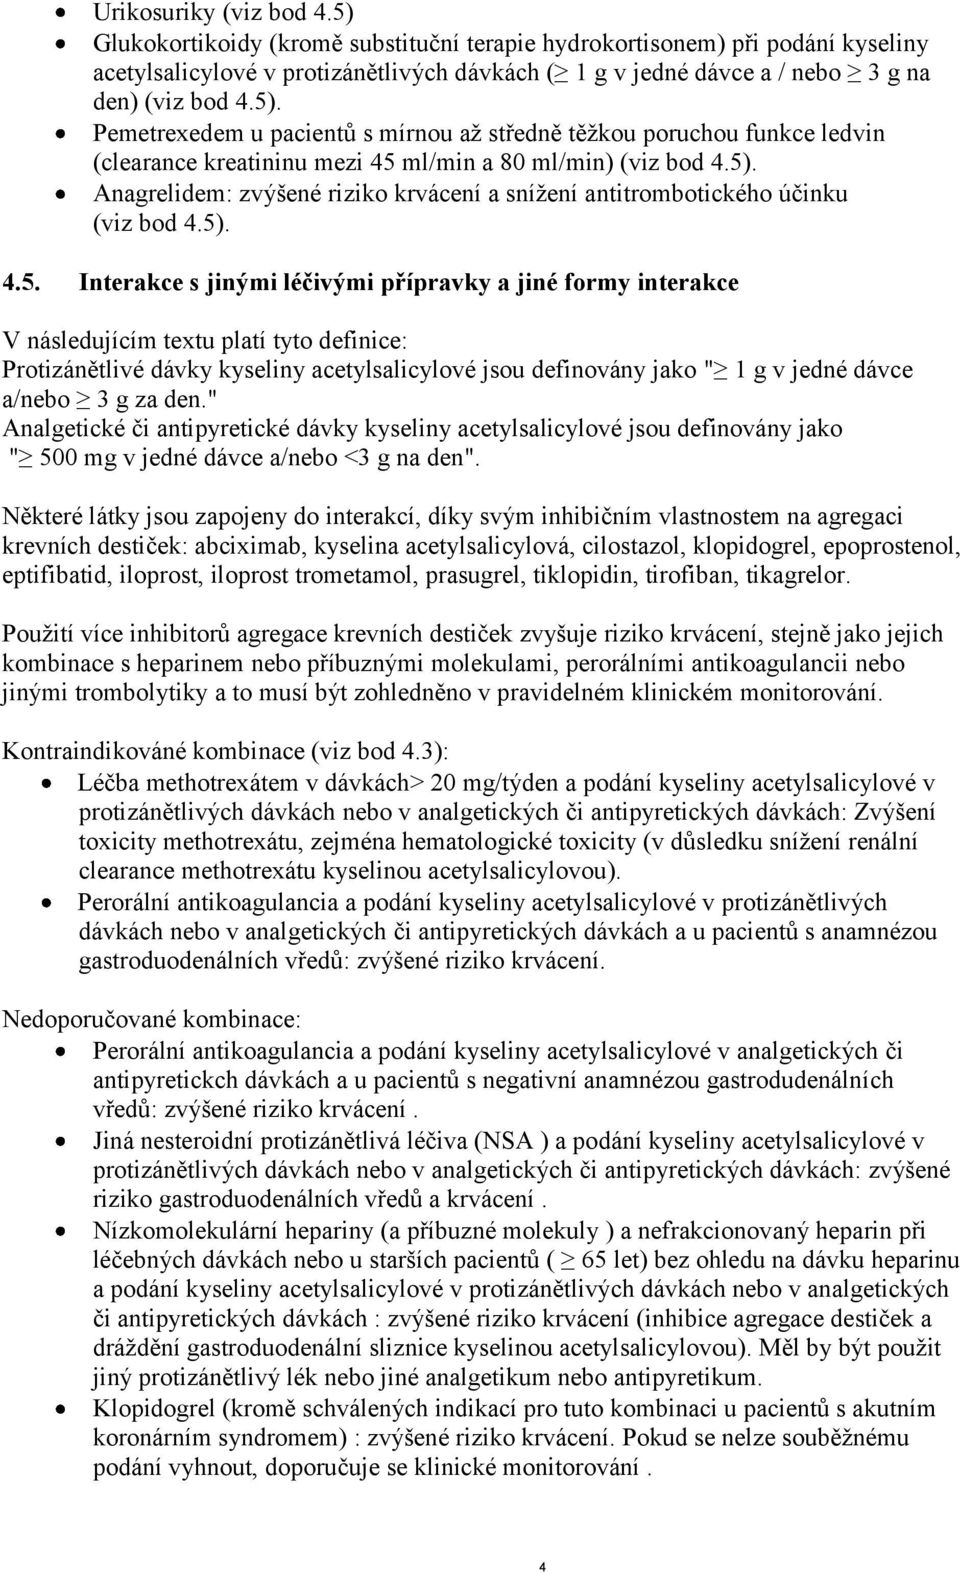 5). Anagrelidem: zvýšené riziko krvácení a snížení antitrombotického účinku (viz bod 4.5). 4.5. Interakce s jinými léčivými přípravky a jiné formy interakce V následujícím textu platí tyto definice: